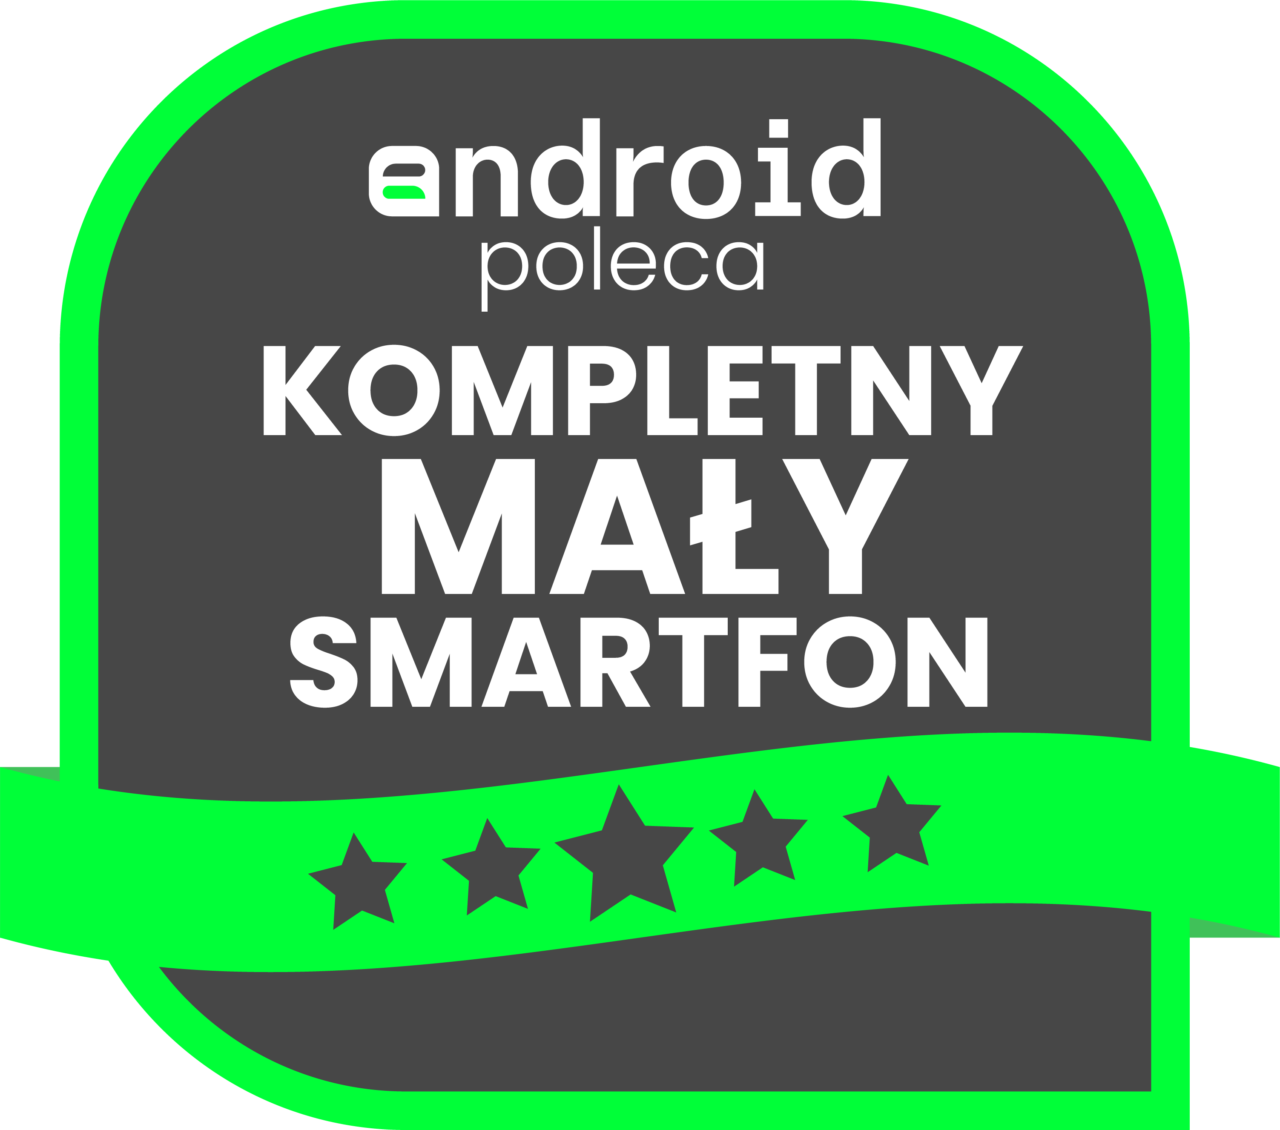 Grafika z napisem "android poleca KOMPLETNY MAŁY SMARTFON" z pięcioma gwiazdkami na zielonym tle.